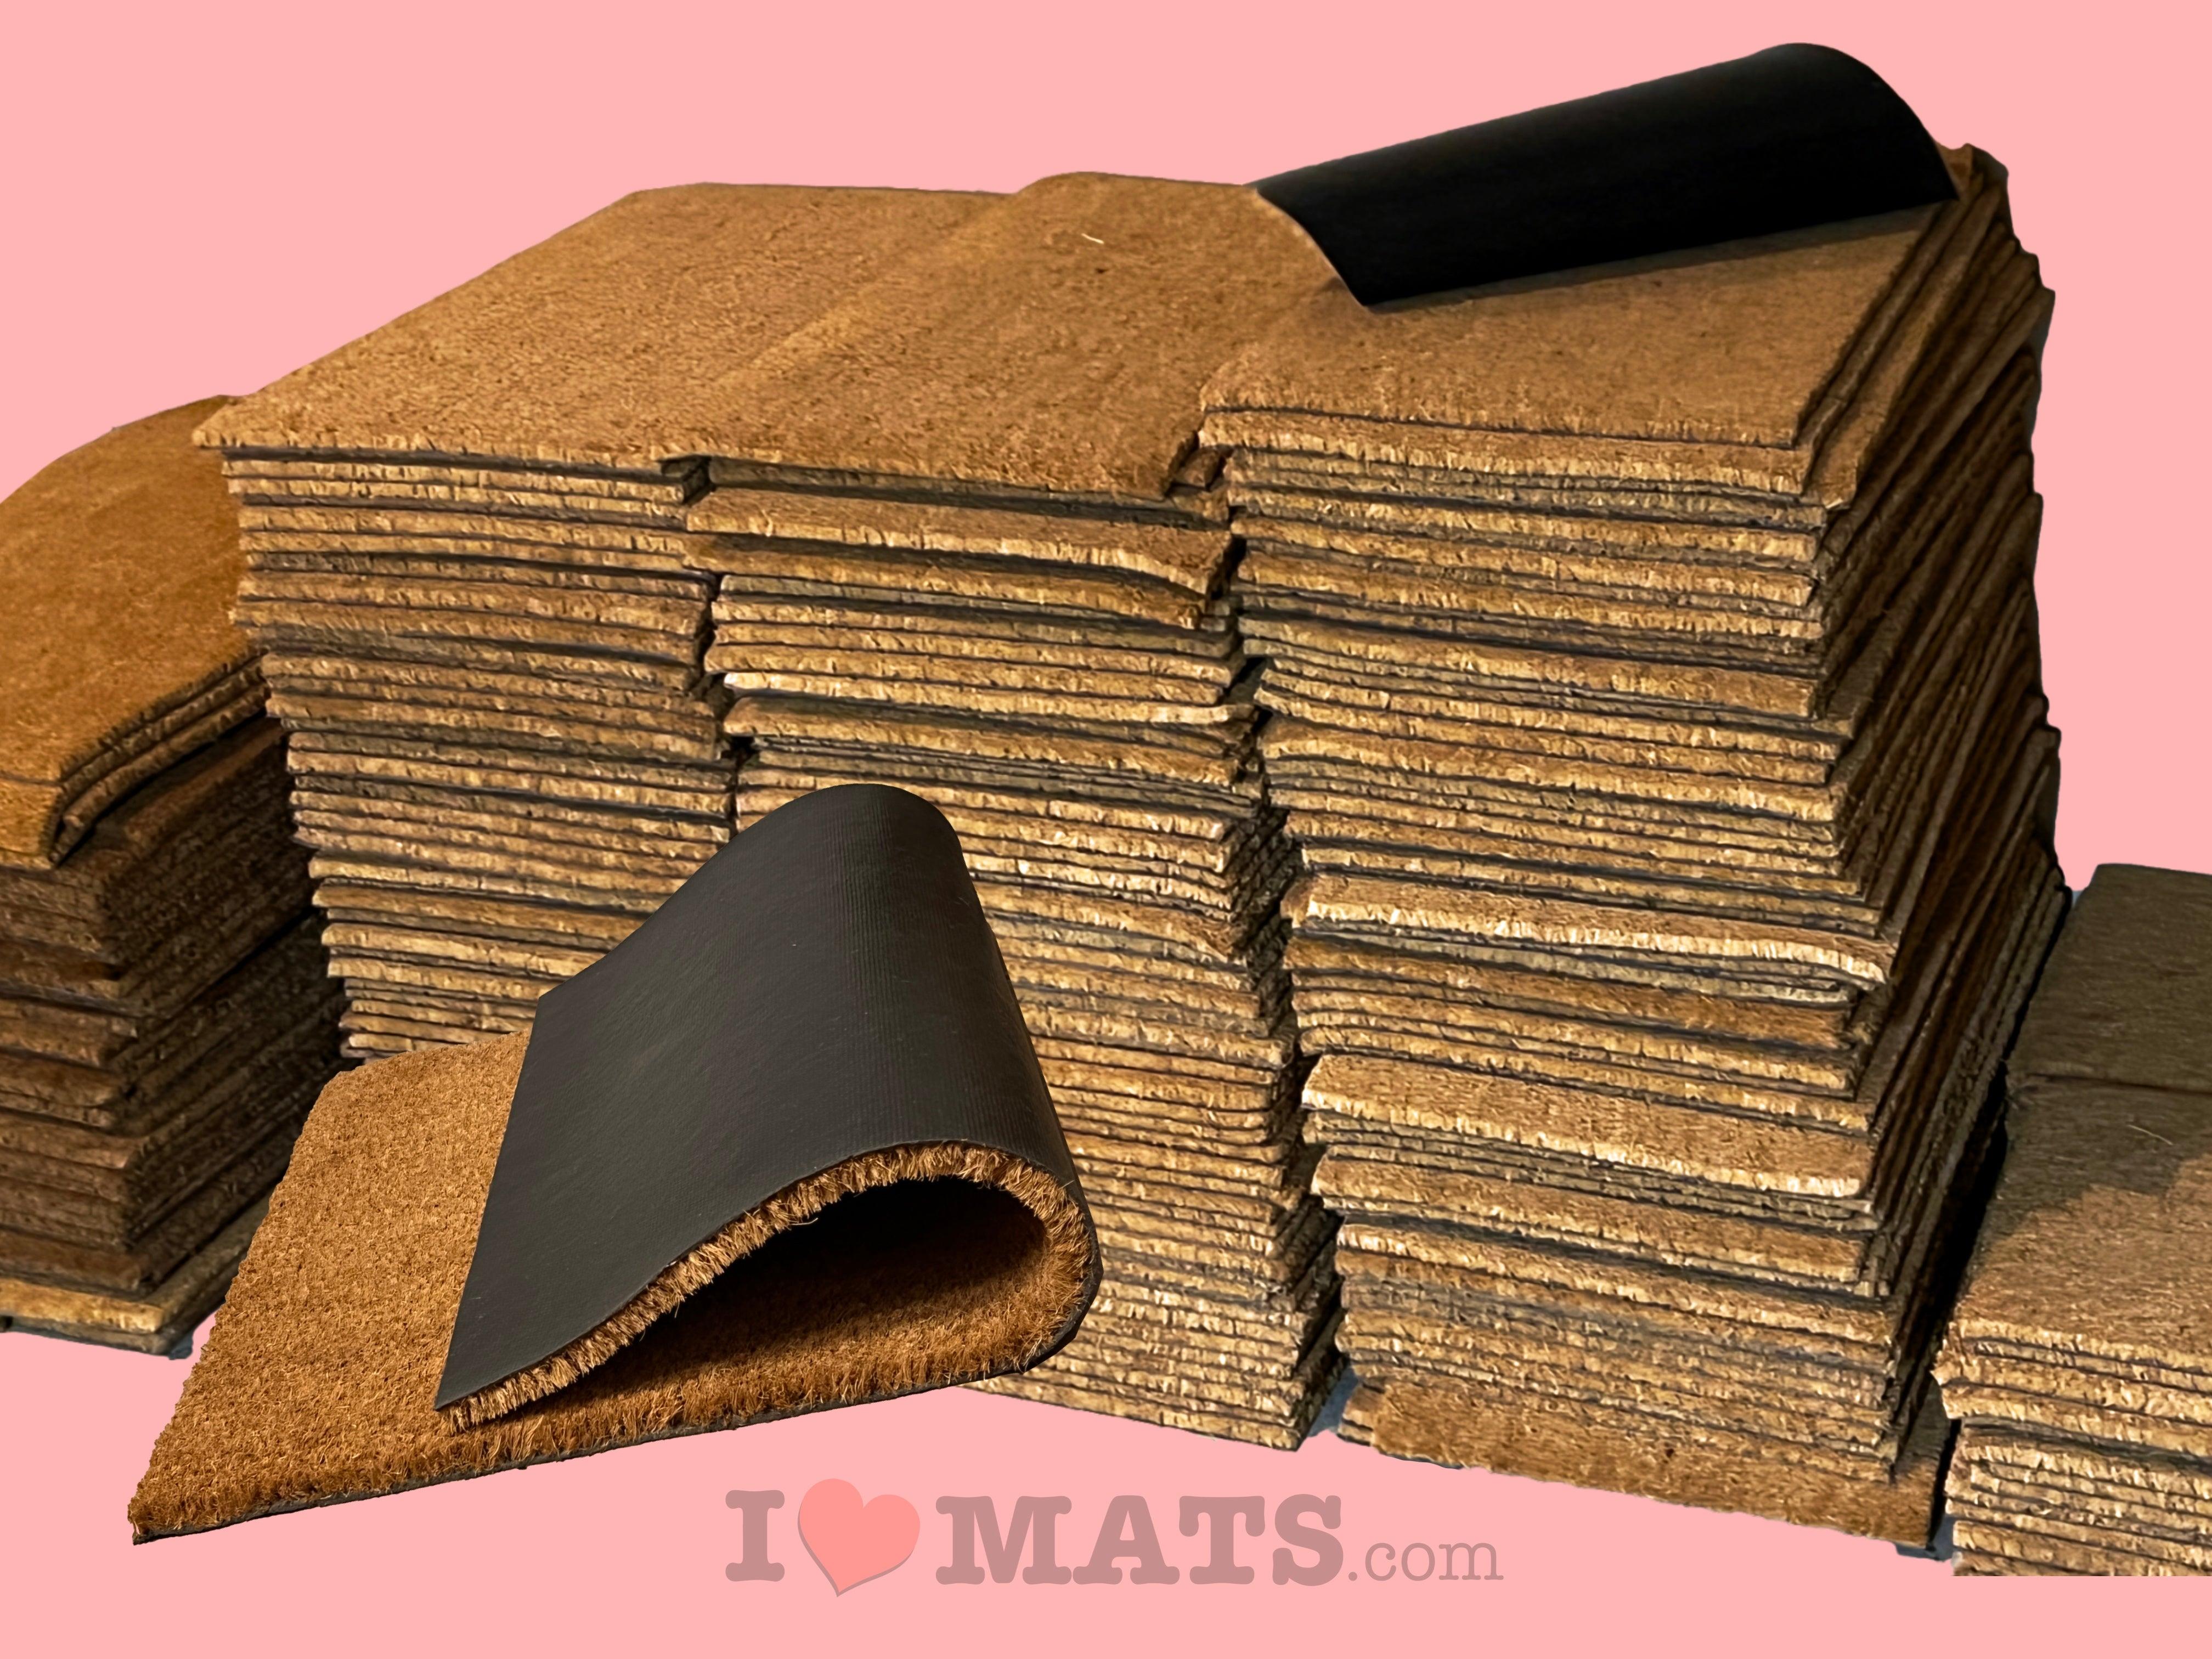 NEW 18 x 30 in Plain Door Mat Natural Coir Recycled Rubber Doormat